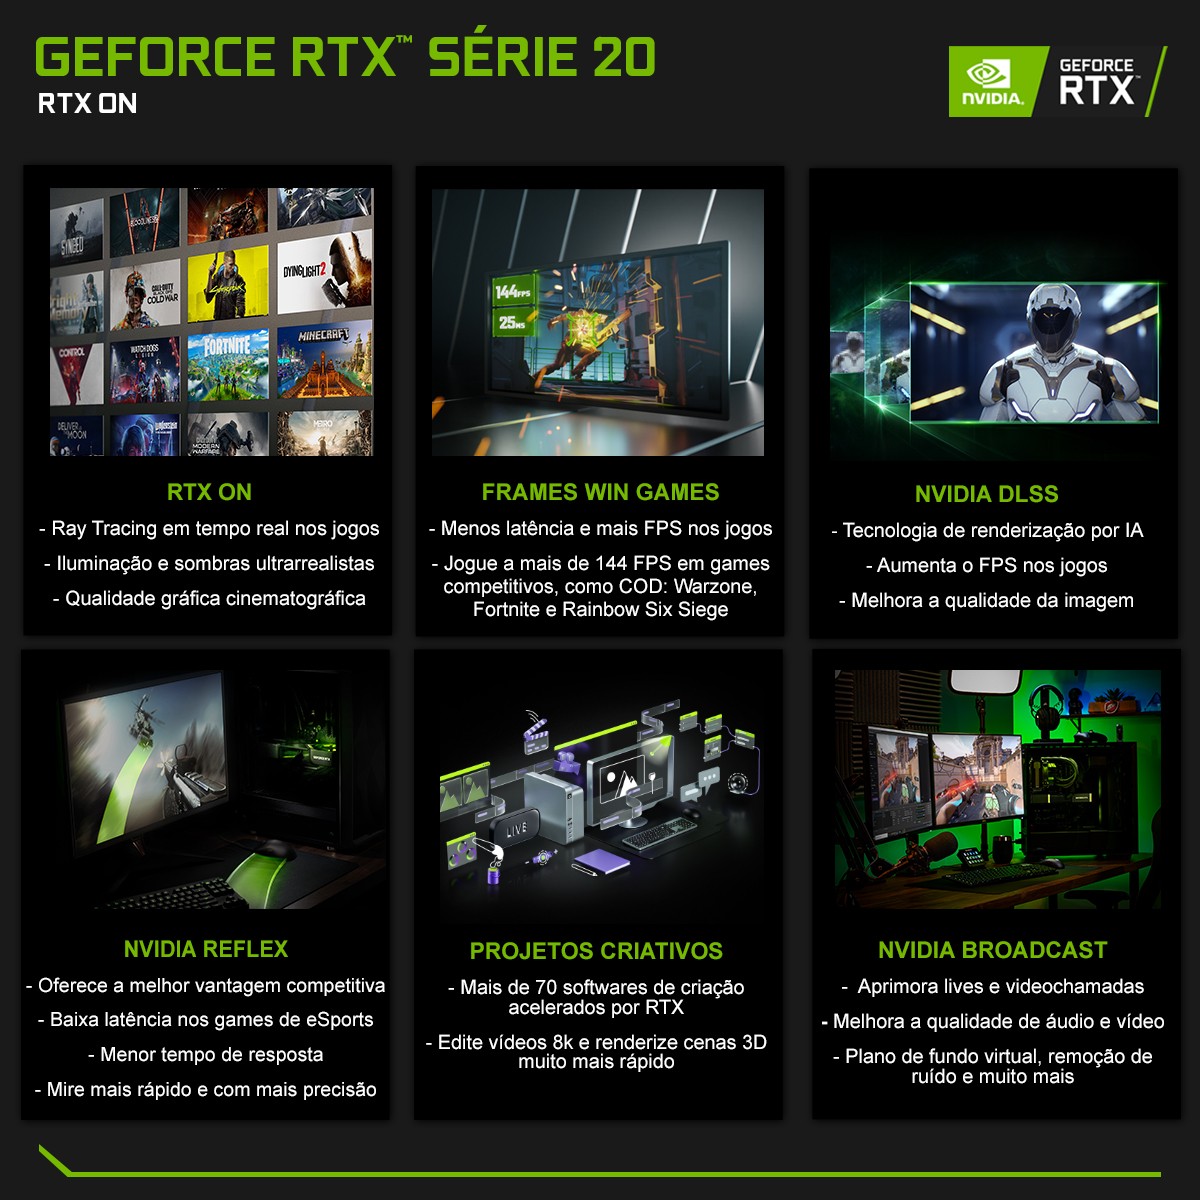 Placa de Vídeo Zotac GeForce RTX 2080 AMP, 8GB GDDR6, 256Bit, ZT-T20800D-10P